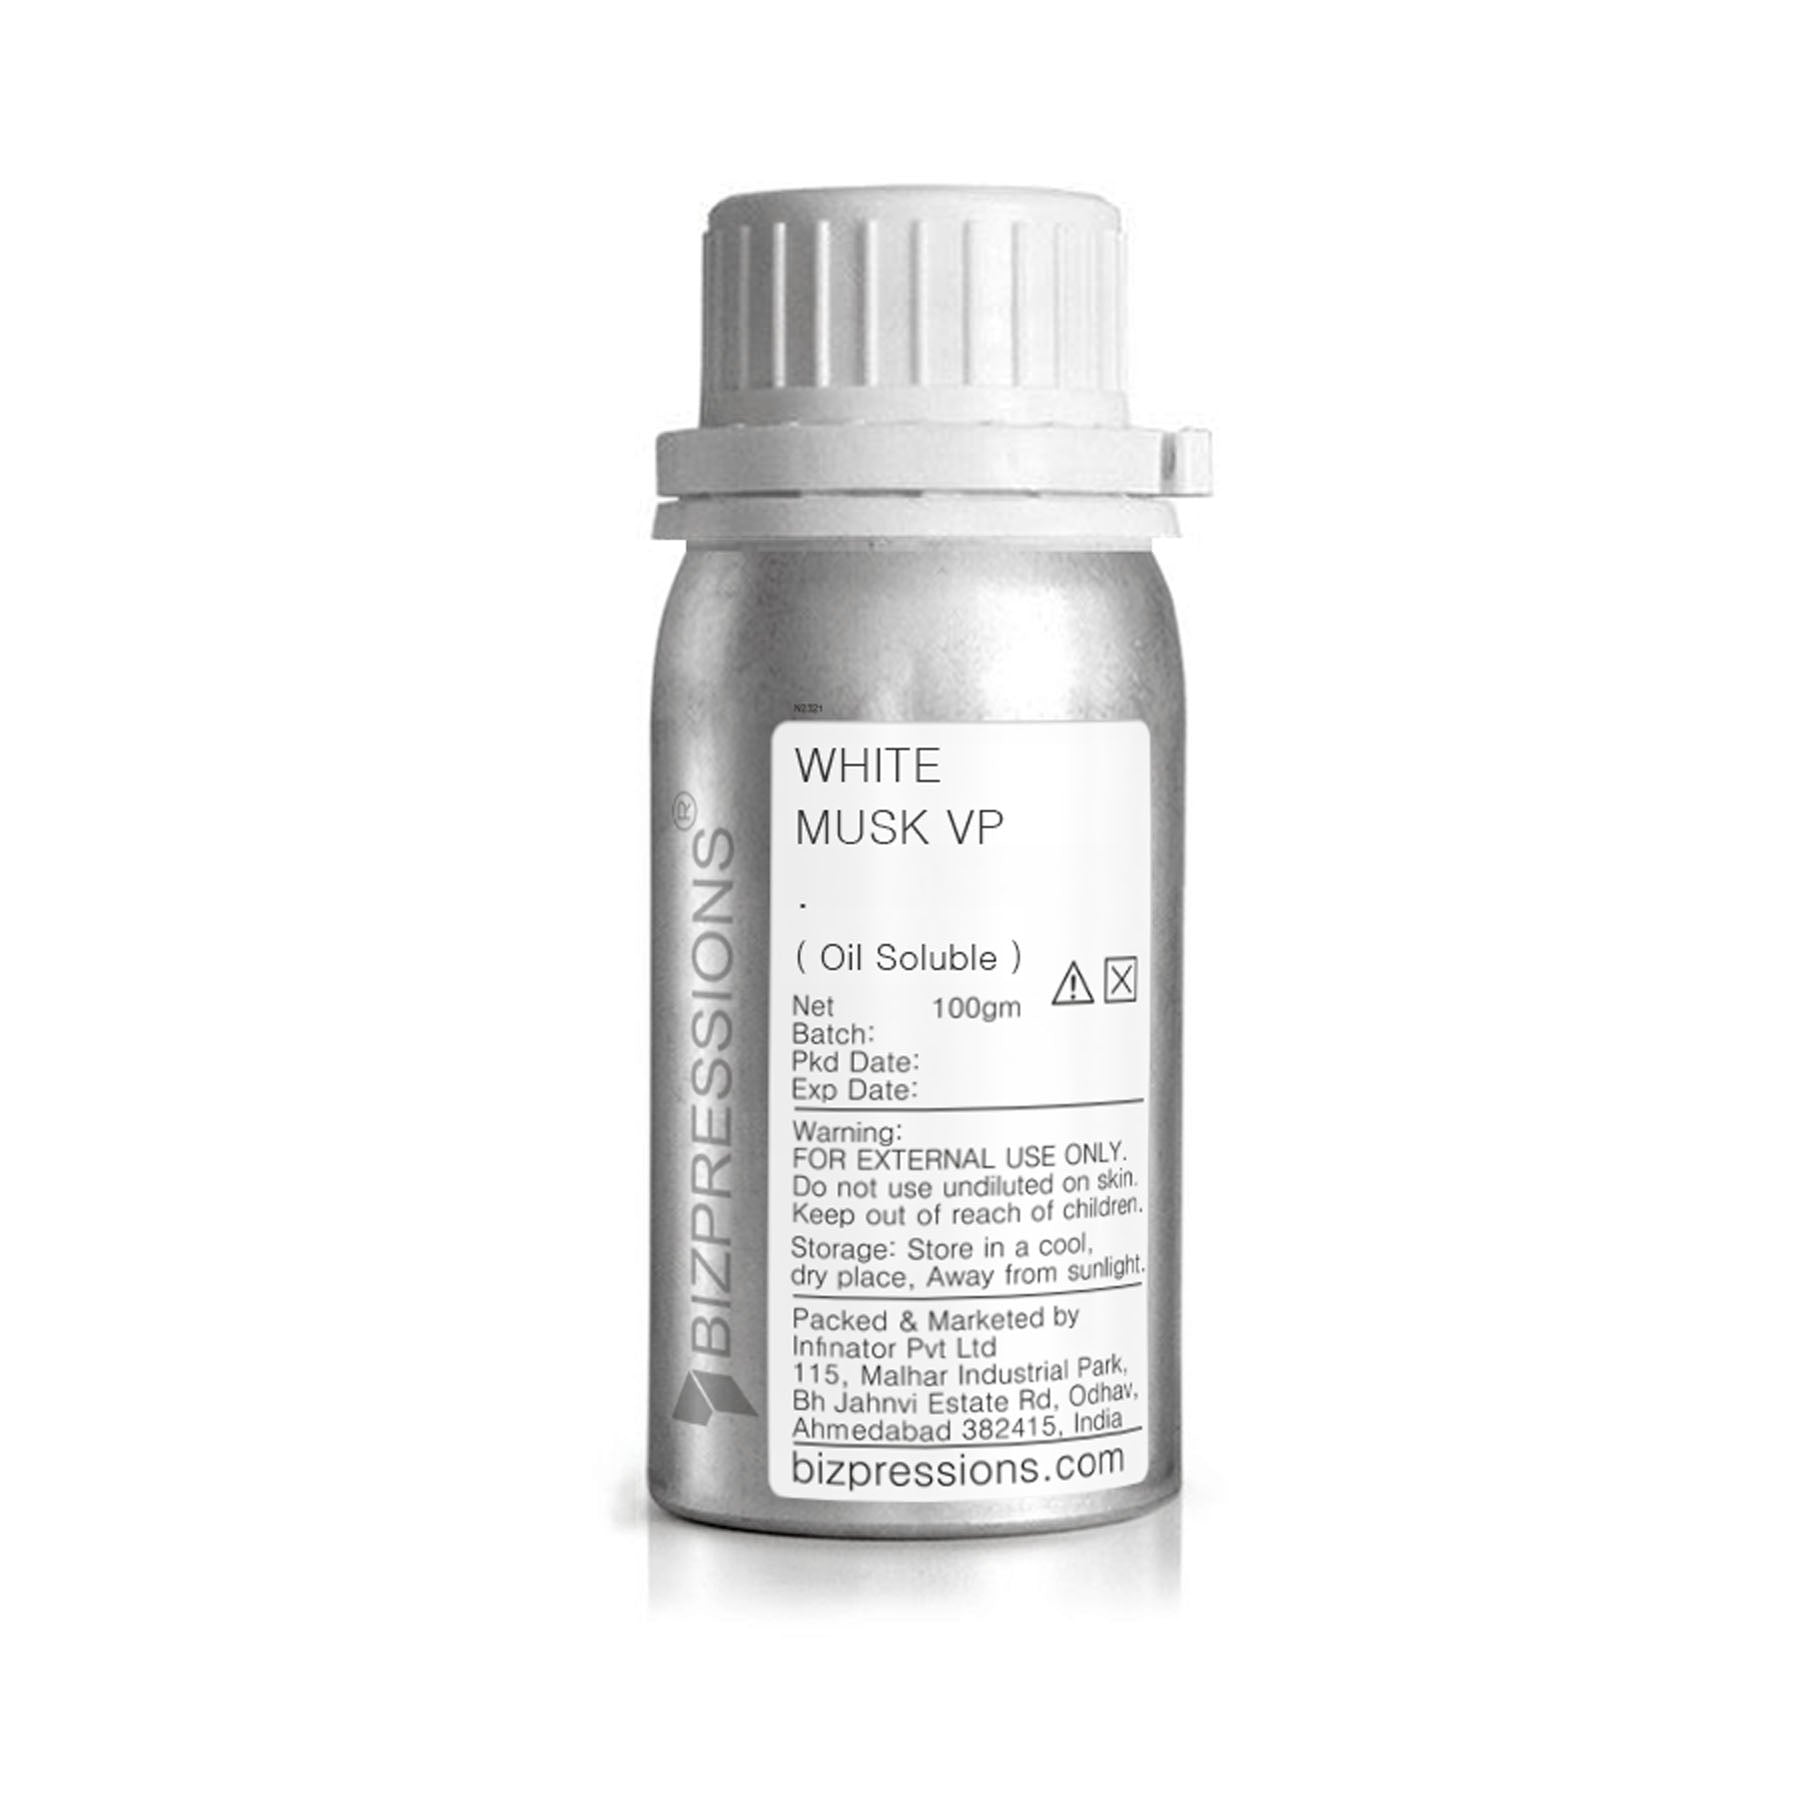 WHITE MUSK VP - Fragrance ( Oil Soluble ) - 100 gm